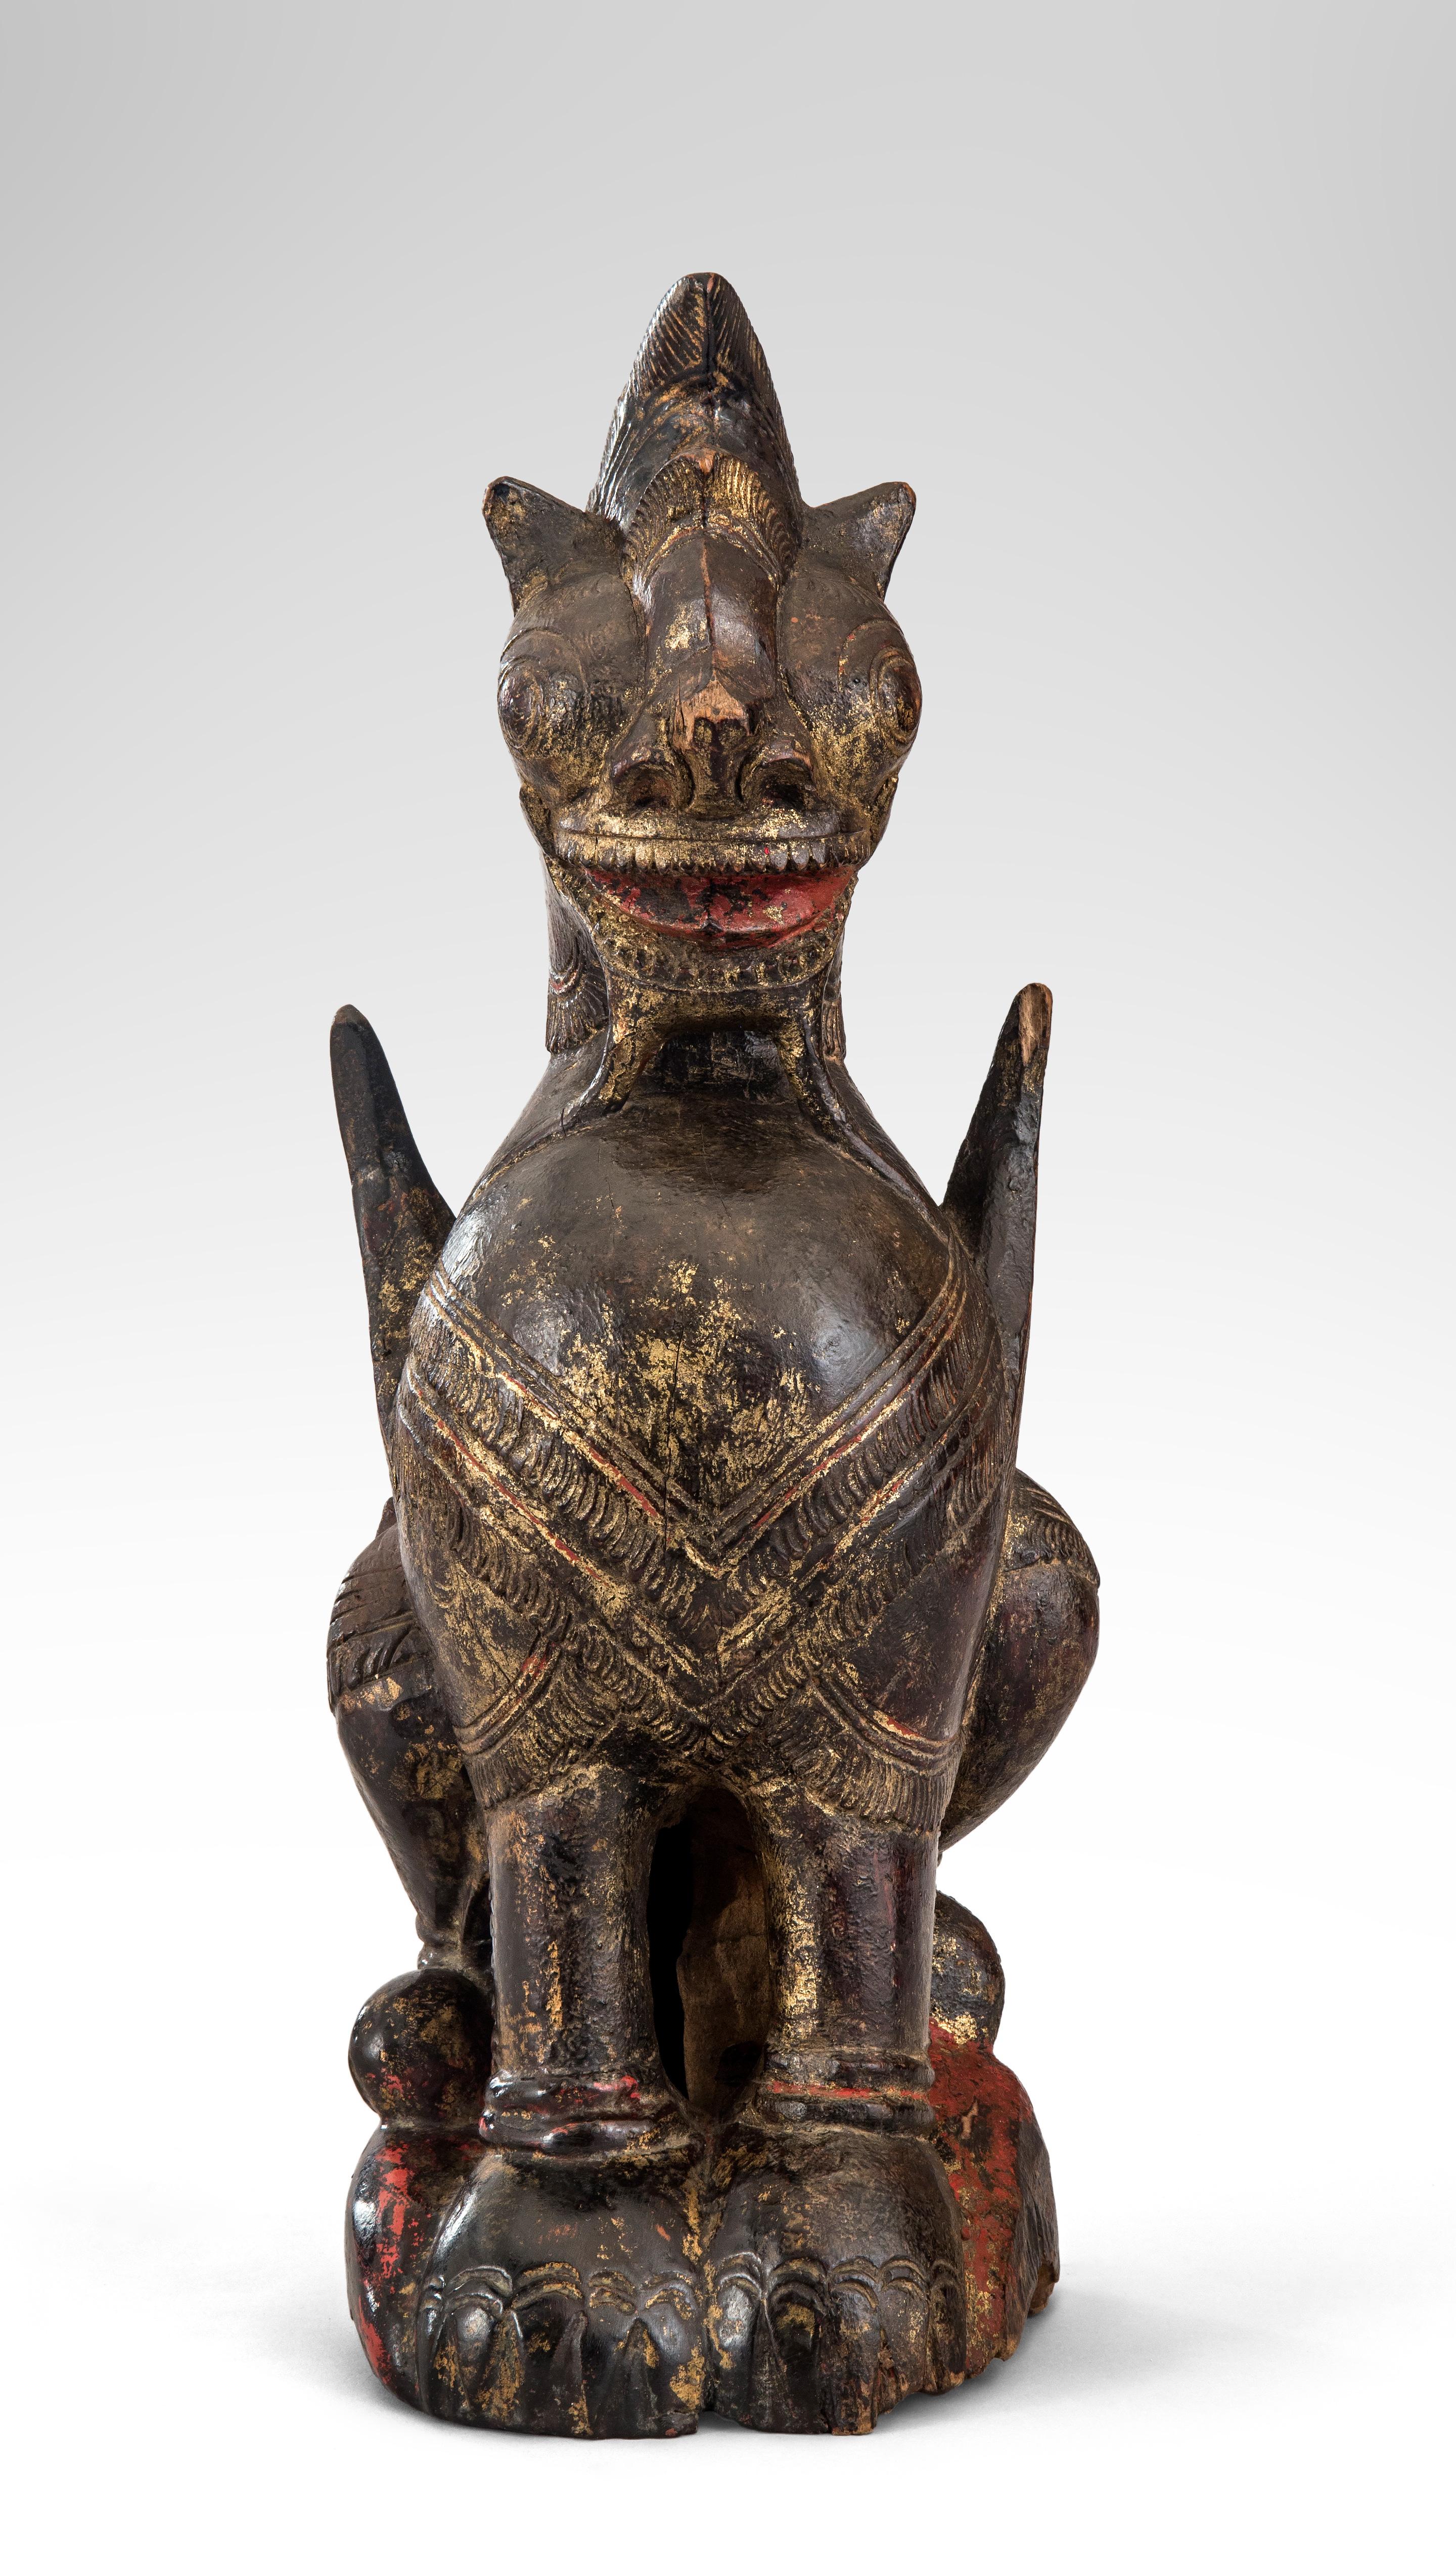 Painted Thai Mythological Guardian Lion Sculpture For Sale